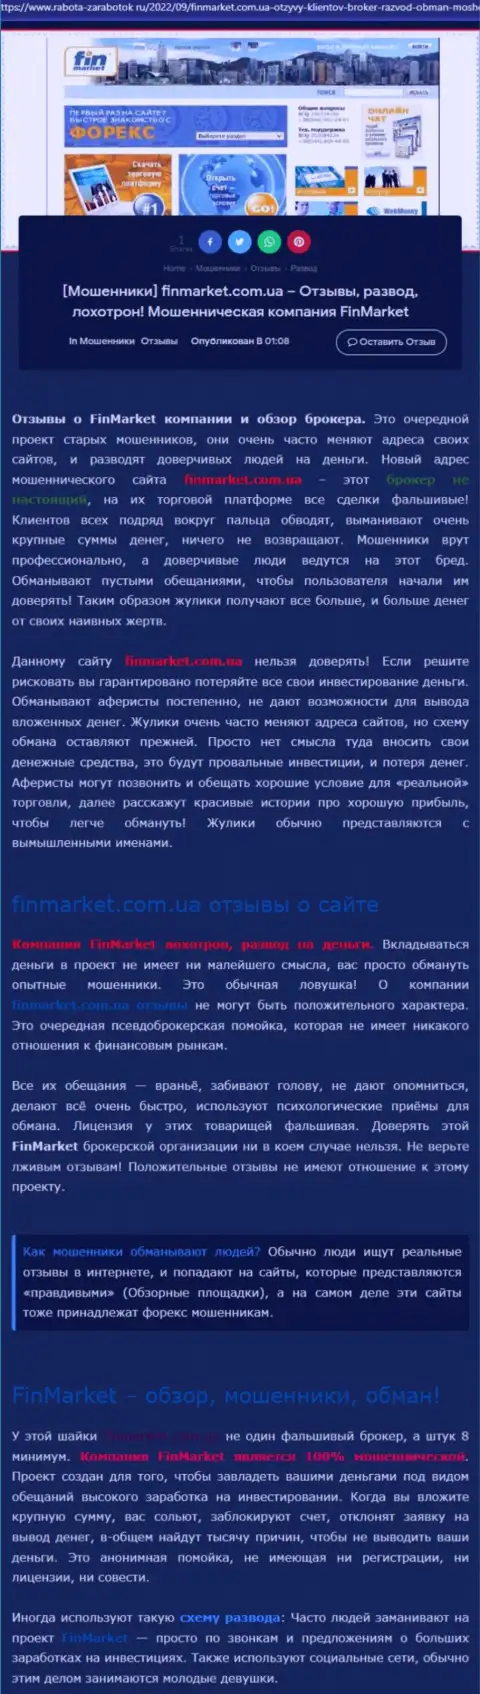 Анализ махинаций конторы FinMarket - лишают денег цинично (обзор)